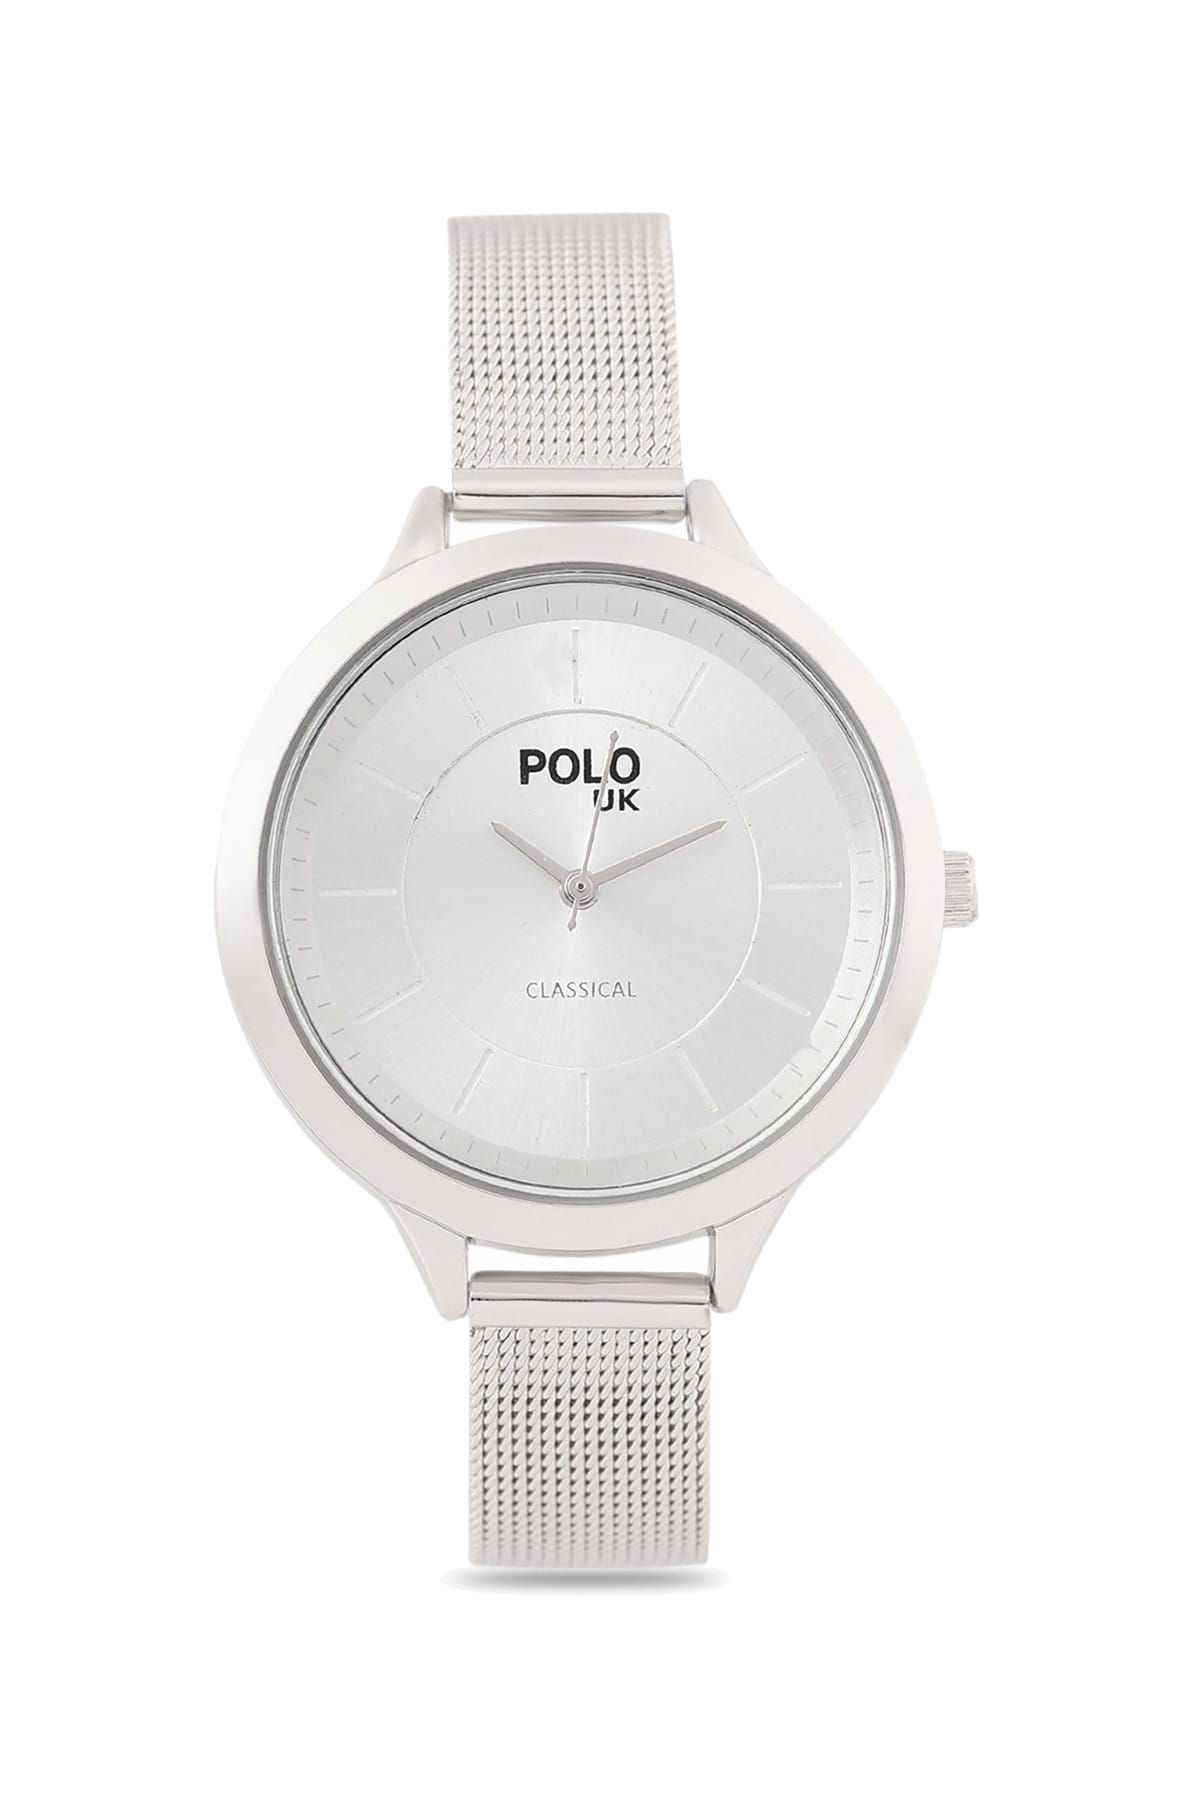 Polo U.K. Kadın Kol Saati POLOUK 5511